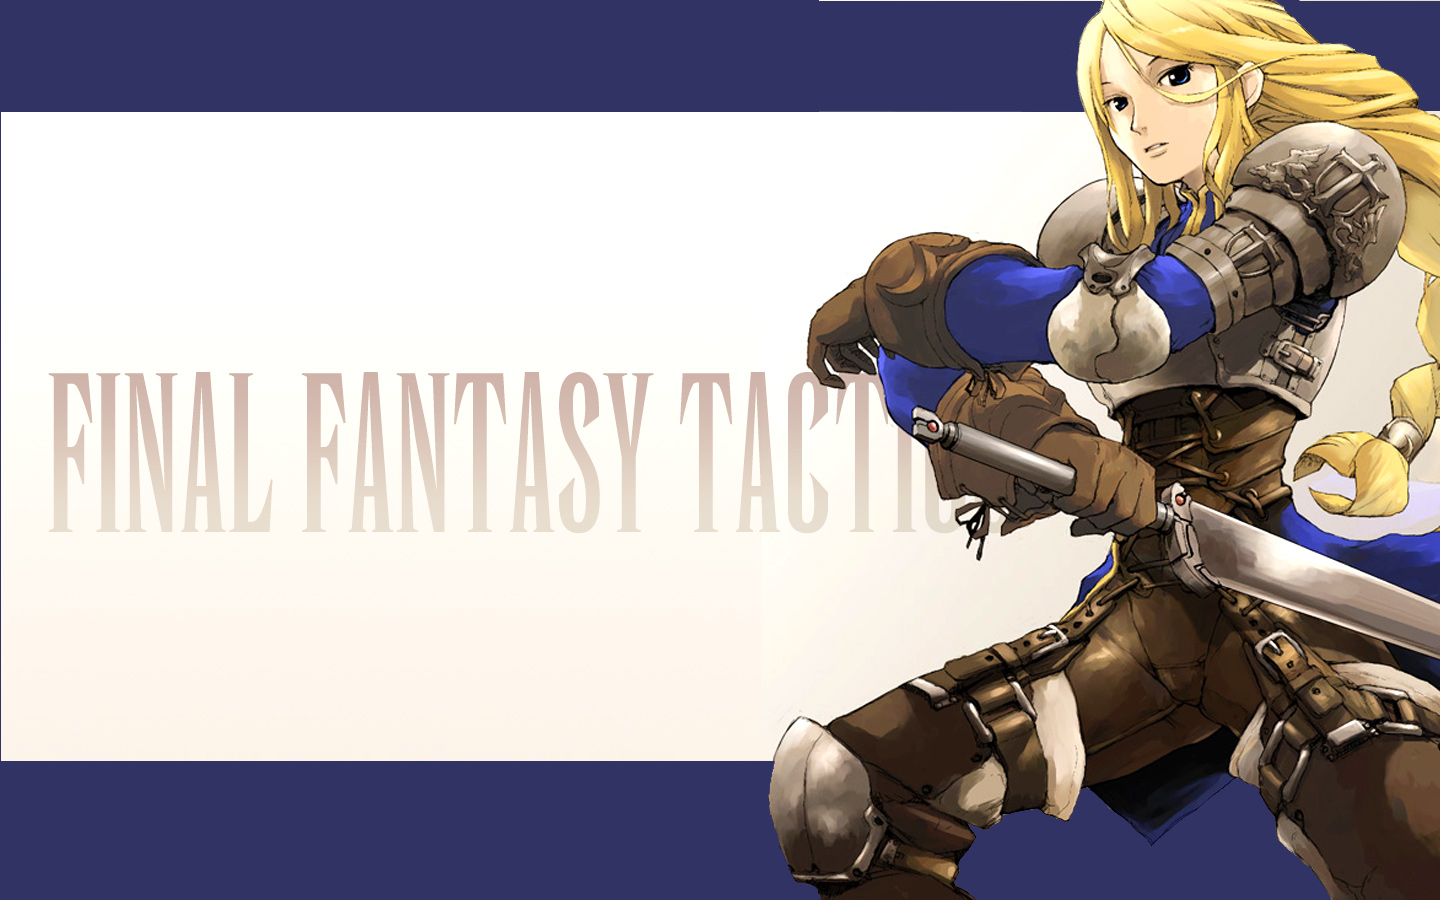 Video Game Final Fantasy Tactics 1440x900